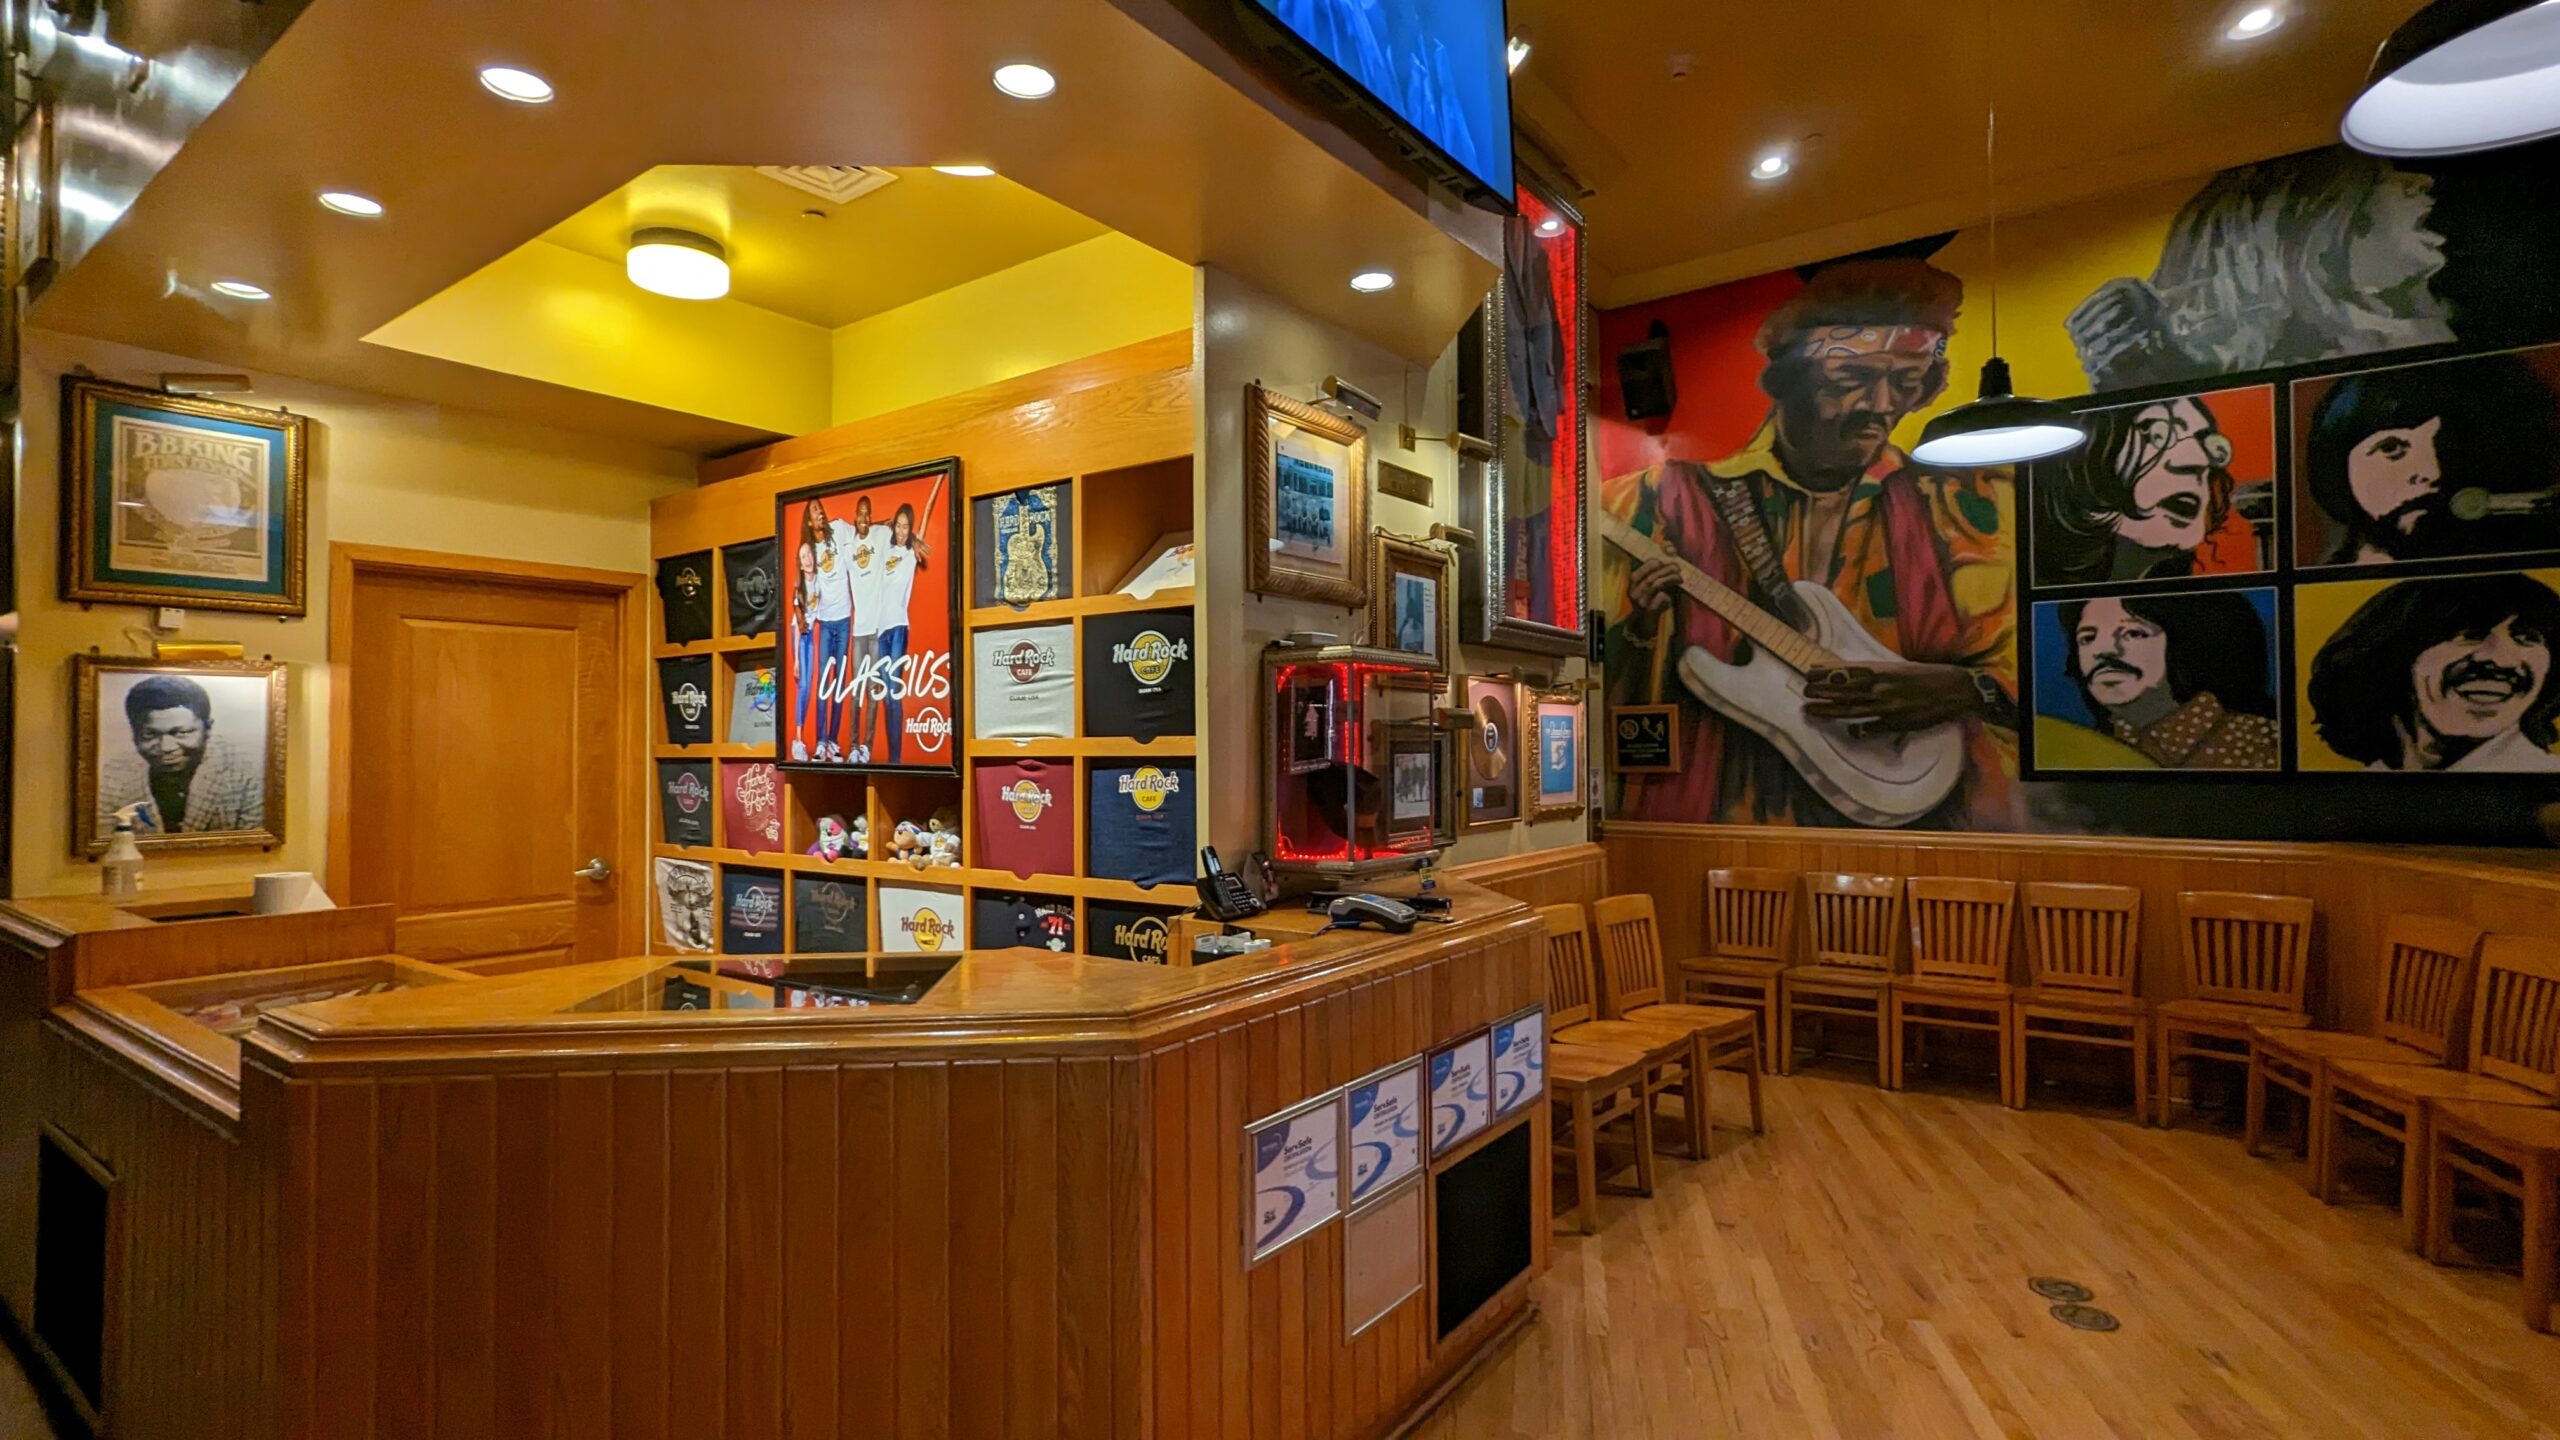 【關島自由行】關島必吃漢堡三選：Hard Rock Cafe 經典漢堡、Meskla Dos Burger 冠軍漢堡、Jeff’s Pirates Cove 海景漢堡